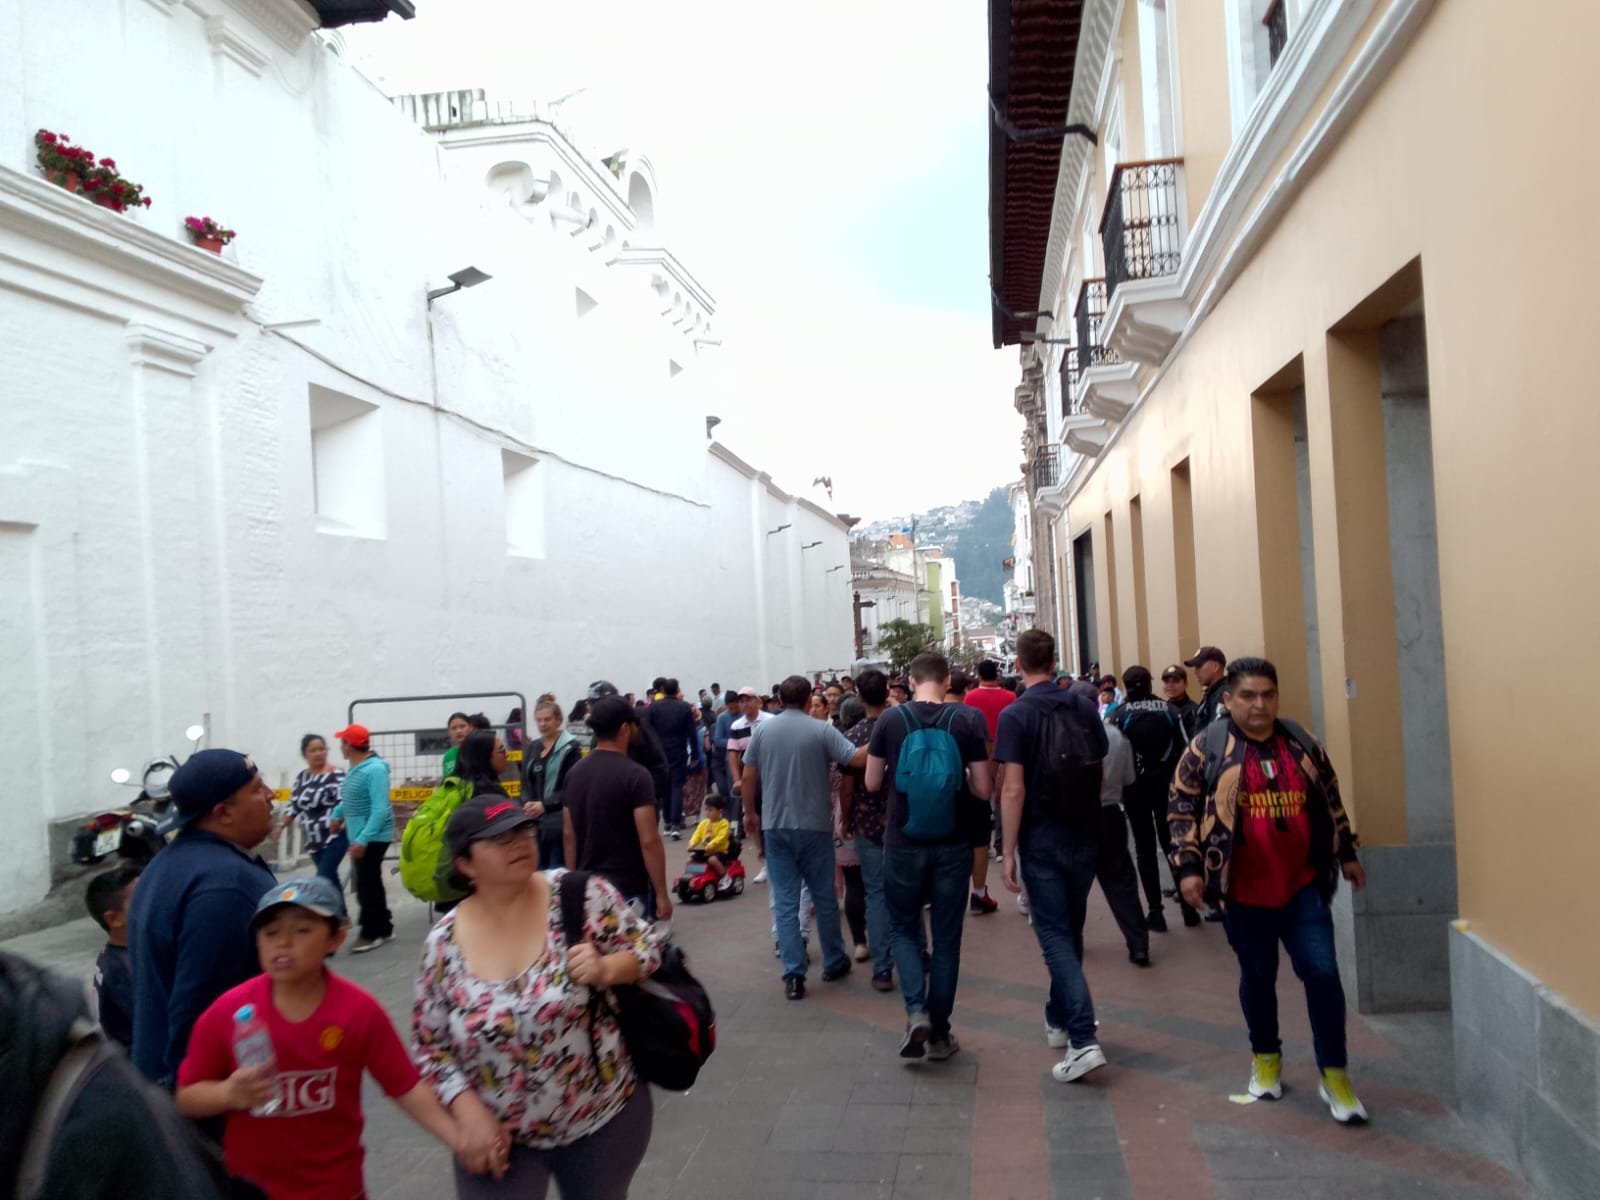 Recuperación. Tras la ola de violencia, Quito tiene que retomar la confianza y seguir avanzando.